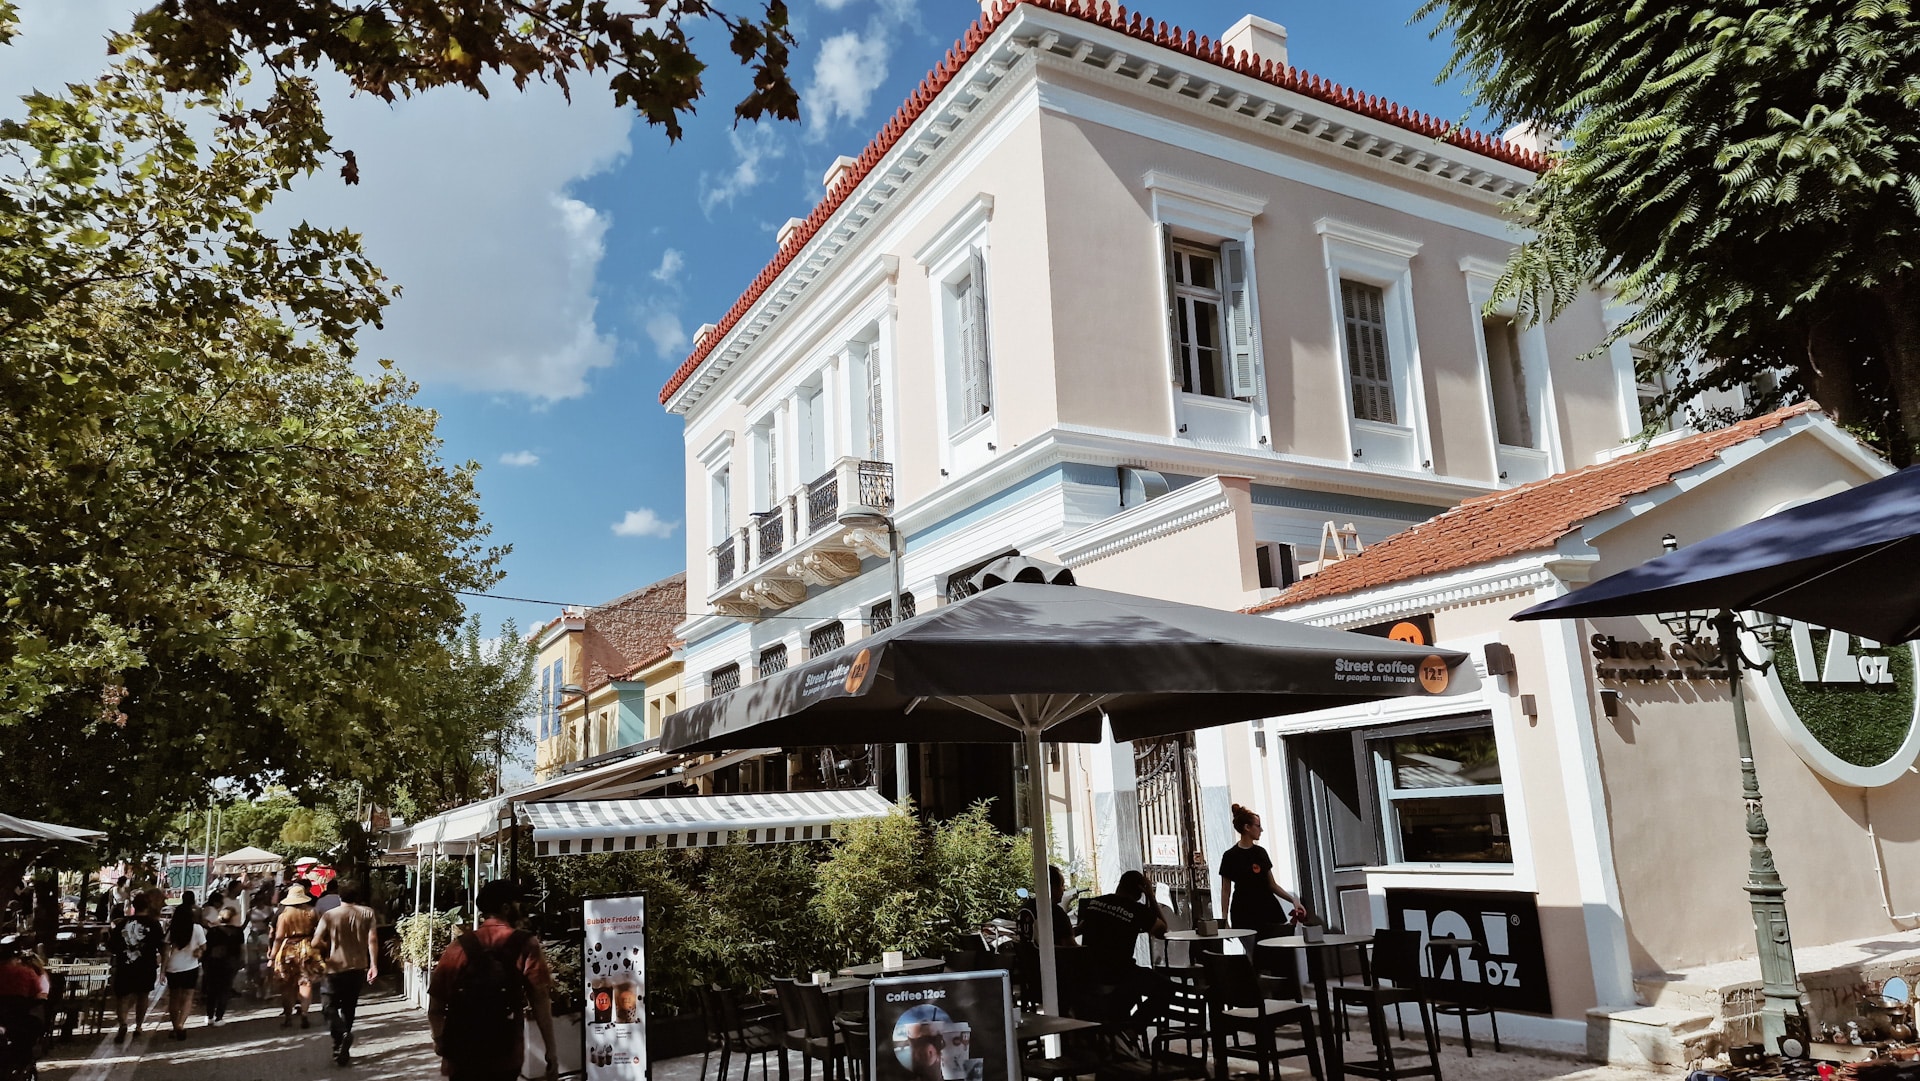 Situato vicino all'Antica Agorà e al Foro Romano, Monastiraki è un vivace quartiere noto per il suo vivace mercato delle pulci e l'atmosfera movimentata.